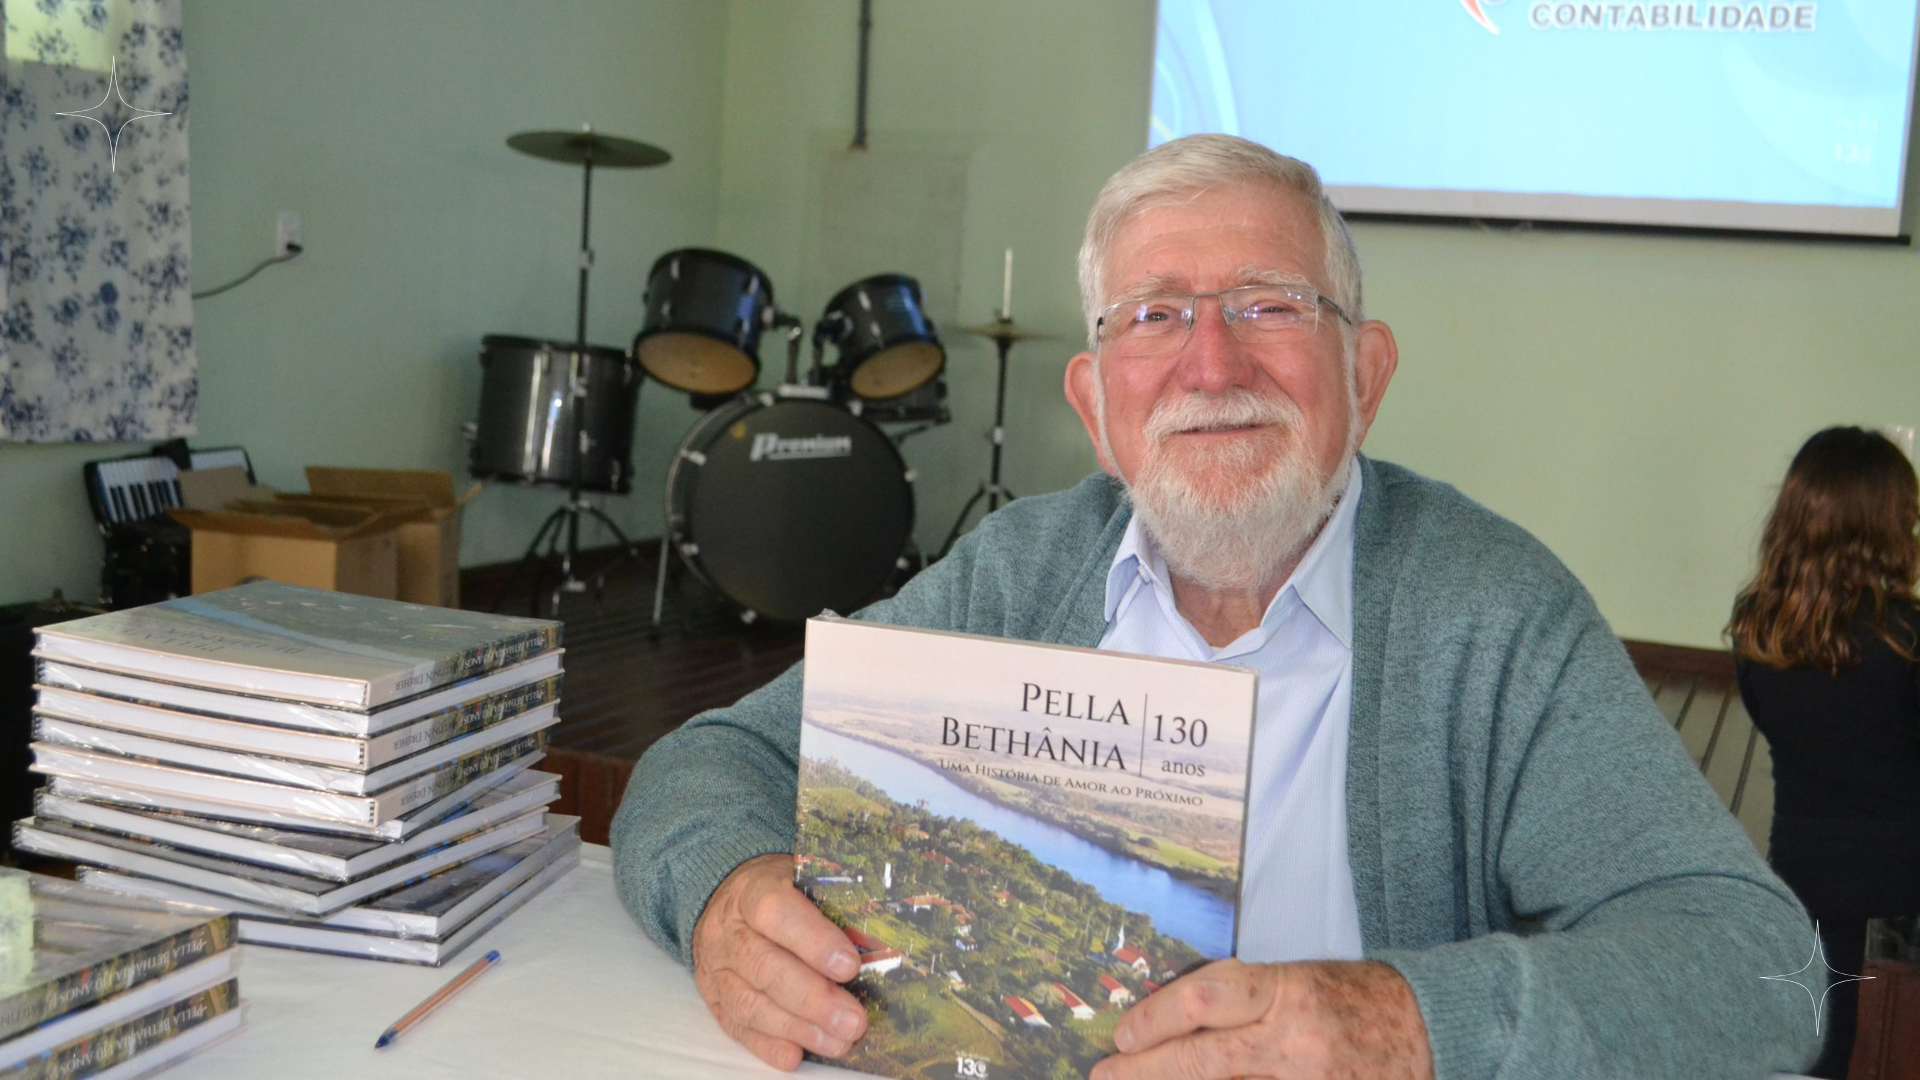 Pella Bethânia lança livro dos 130 anos